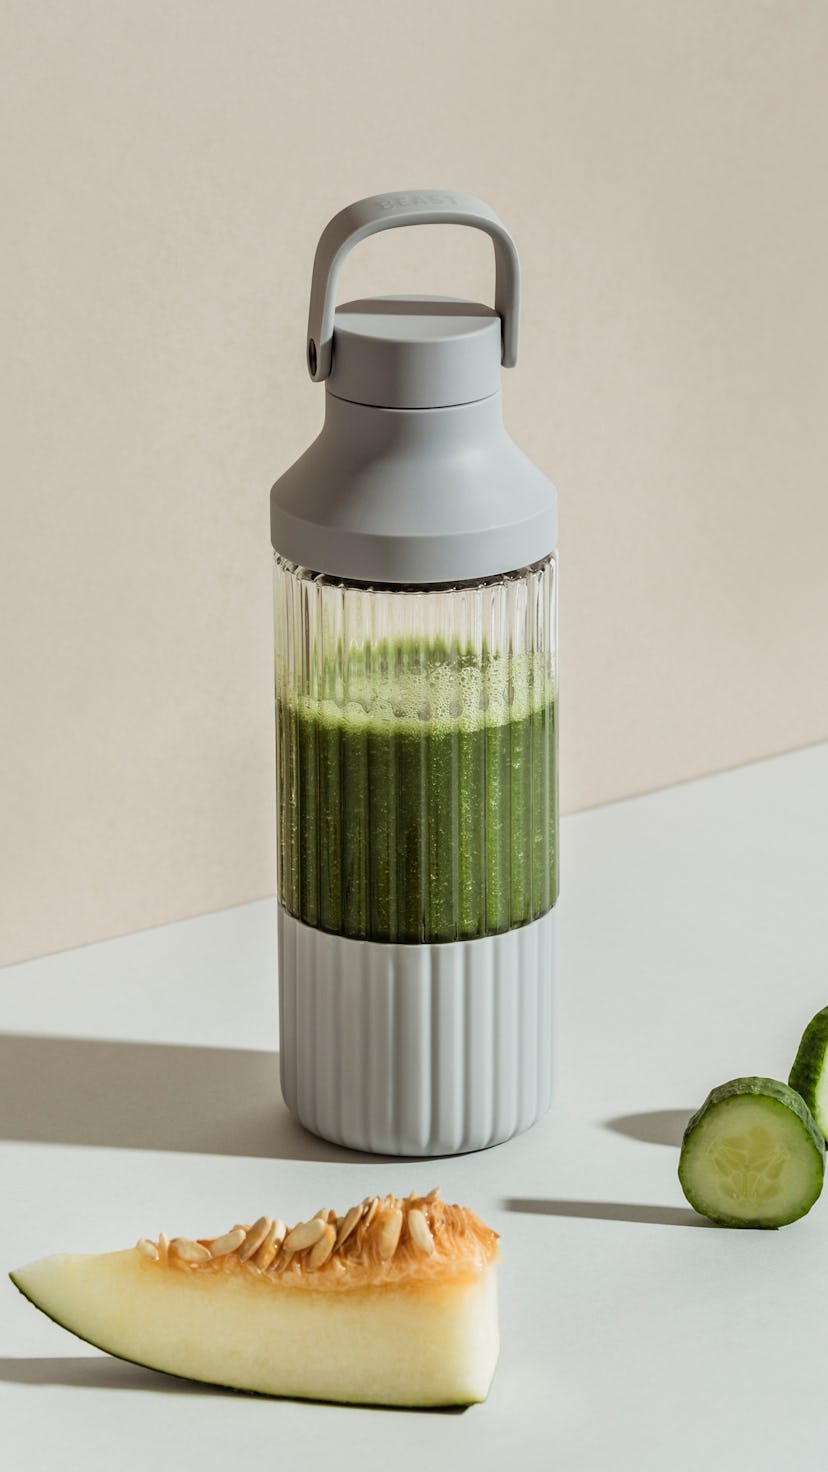 A green smoothie can be seen inside a sleek design B10 blender.